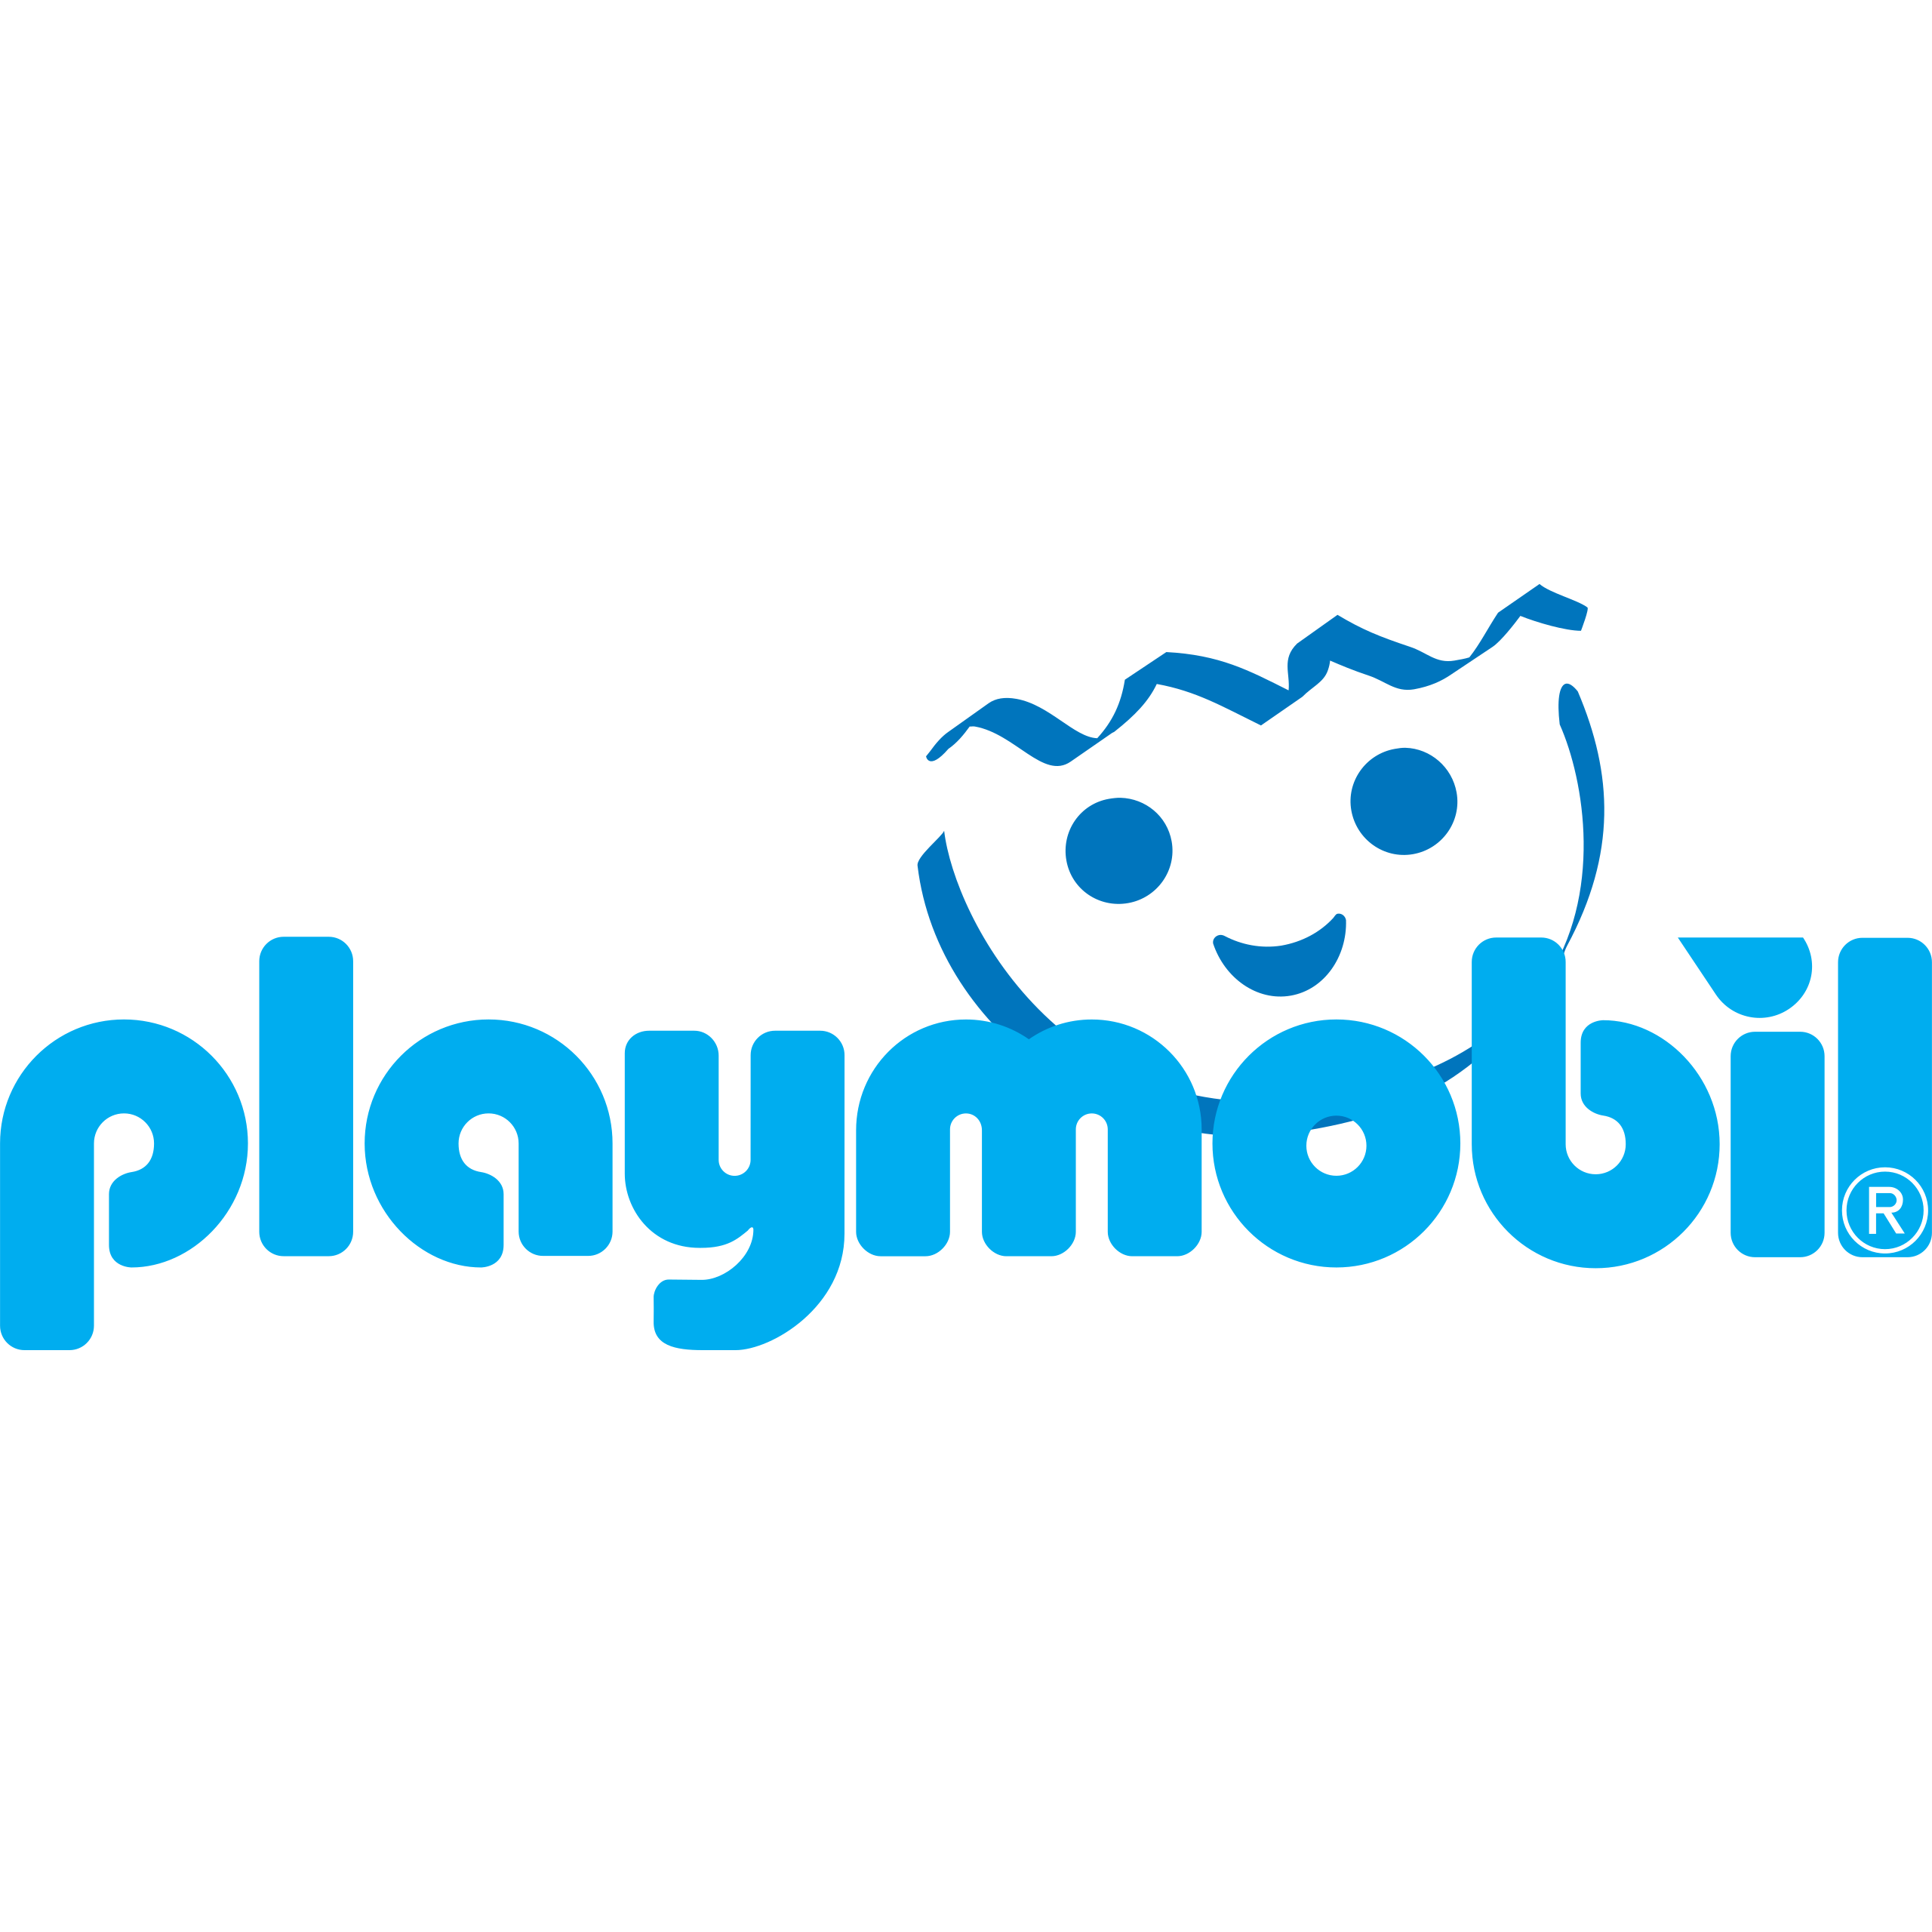 PLAYMOBIL stellt Marketing- und Produkt-Organisation neu auf